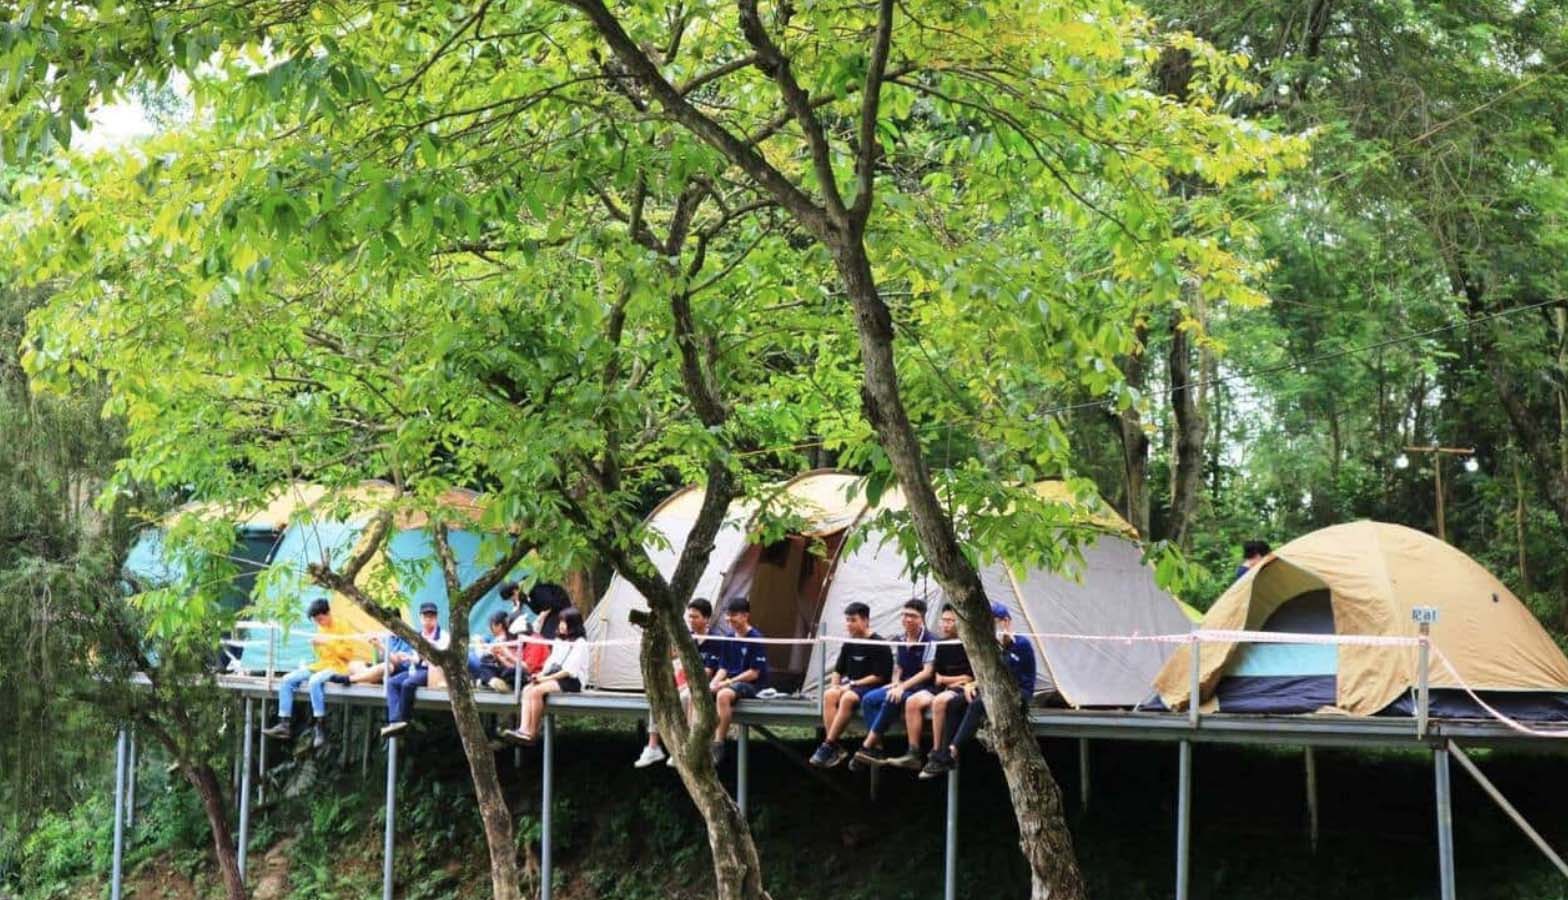 Top điểm du lịch 2/9 gần Hà Nội: Check in, sống ảo, cắm trại đẹp quên sầu - Ảnh 9.